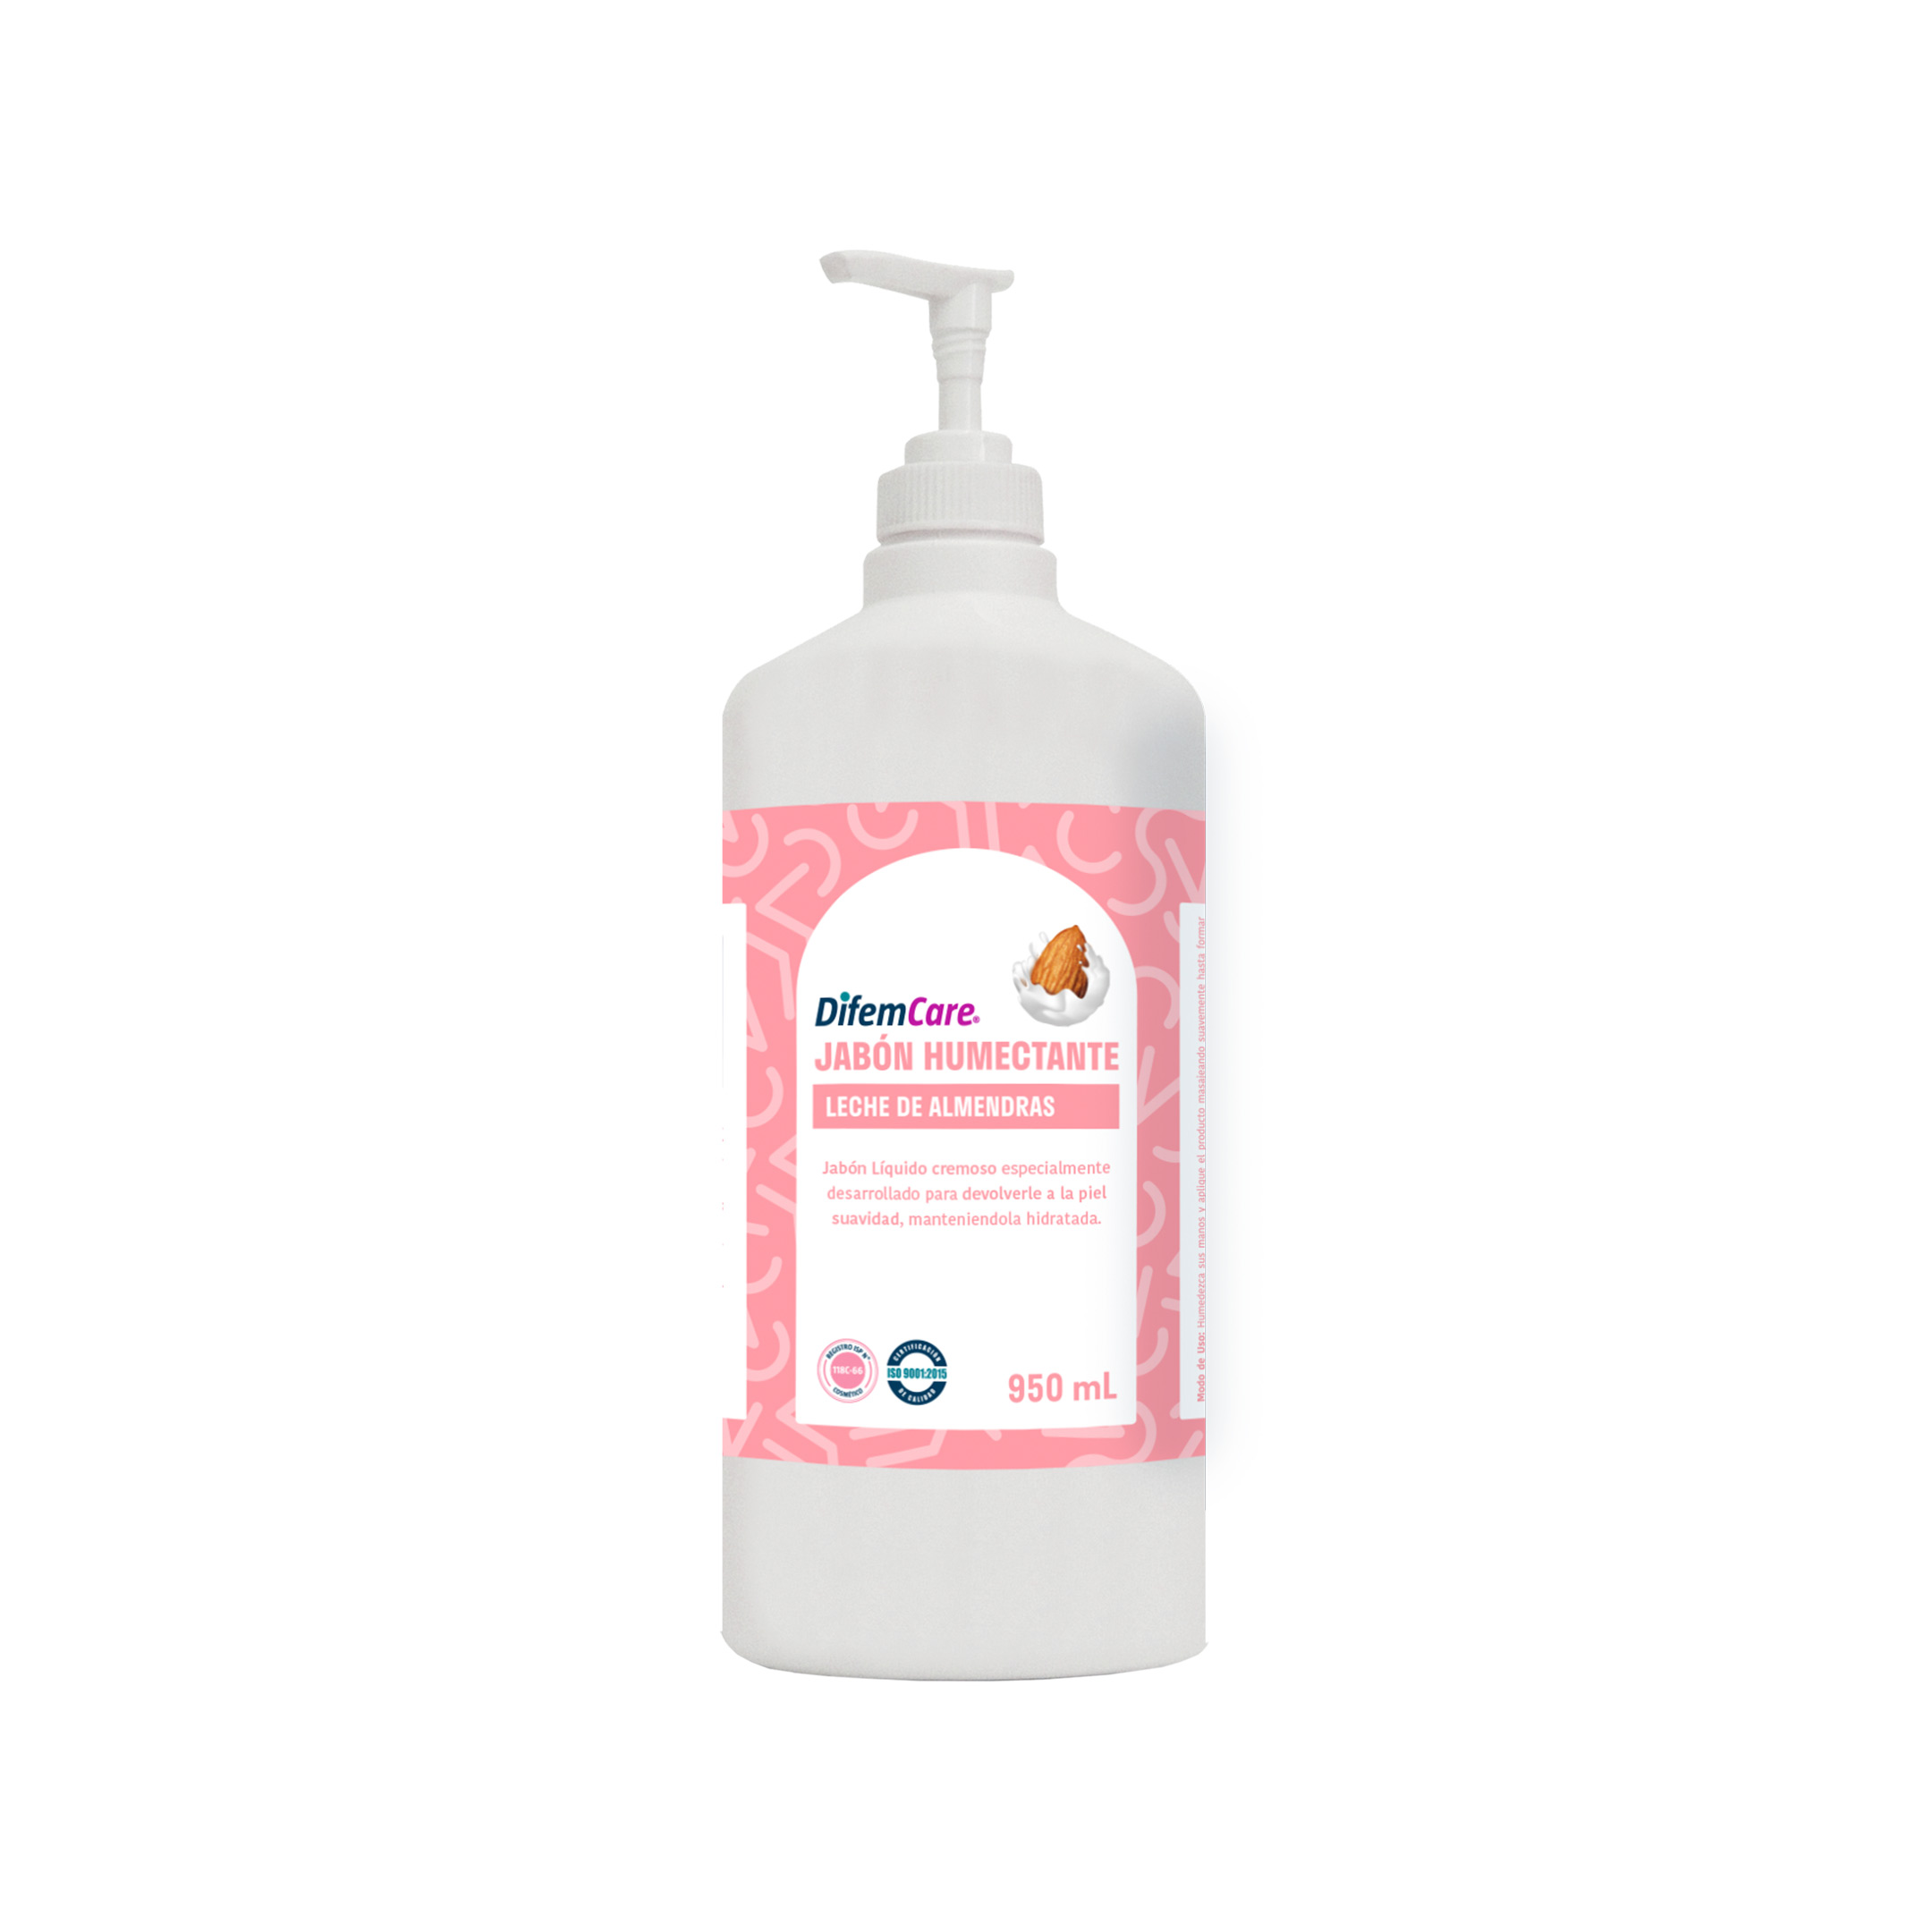 Jabón líquido cremoso especialmente desarrollado para devolverle a la piel suavidad manteniéndola hidratada.